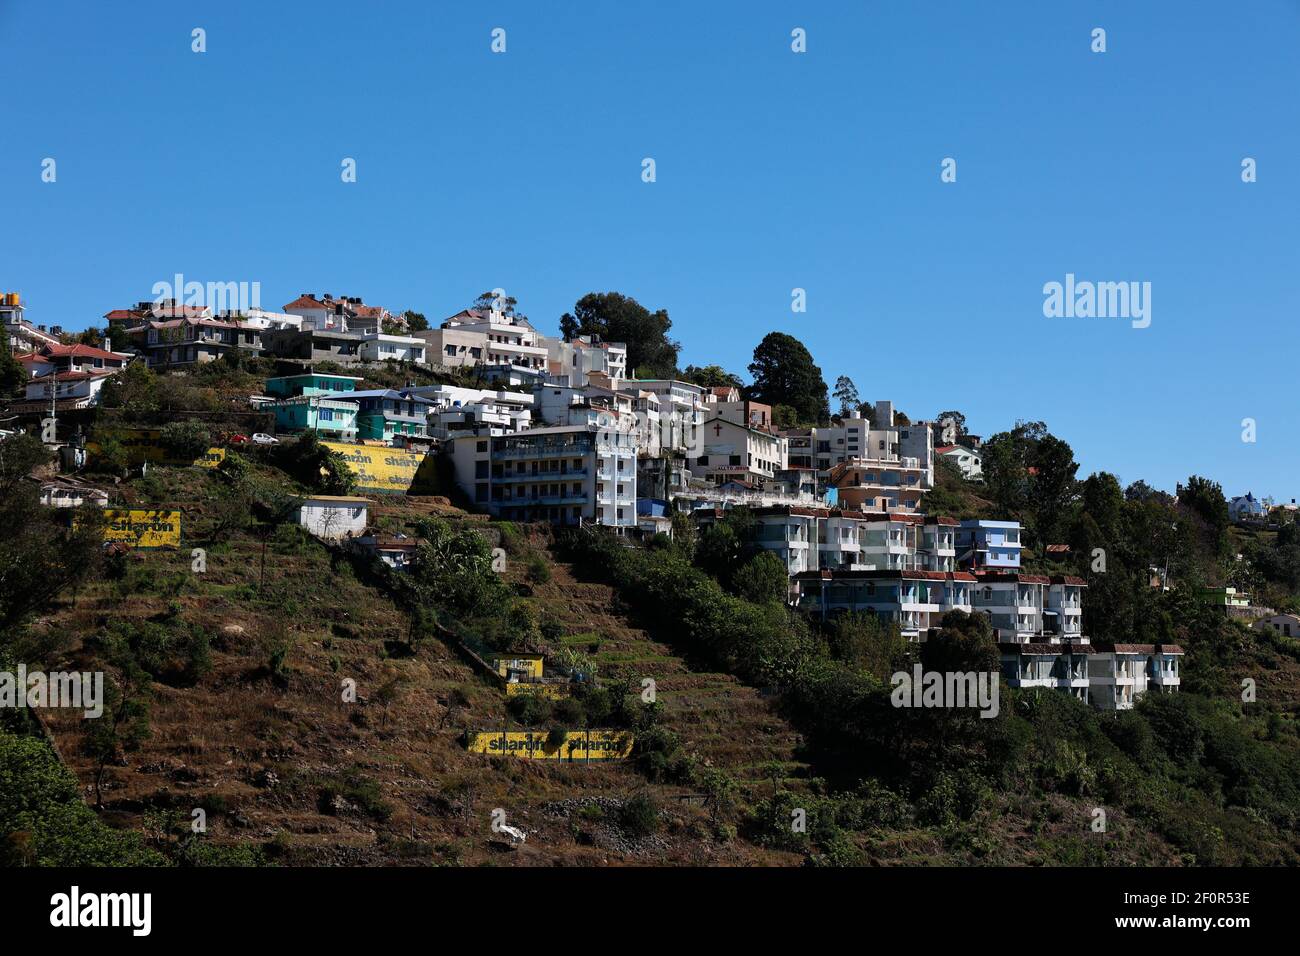 Vista de las casas construidas en las laderas de la montaña en la estación de la colina de Kodaikanal en Dindigul, Tamil Nadu, India Foto de stock